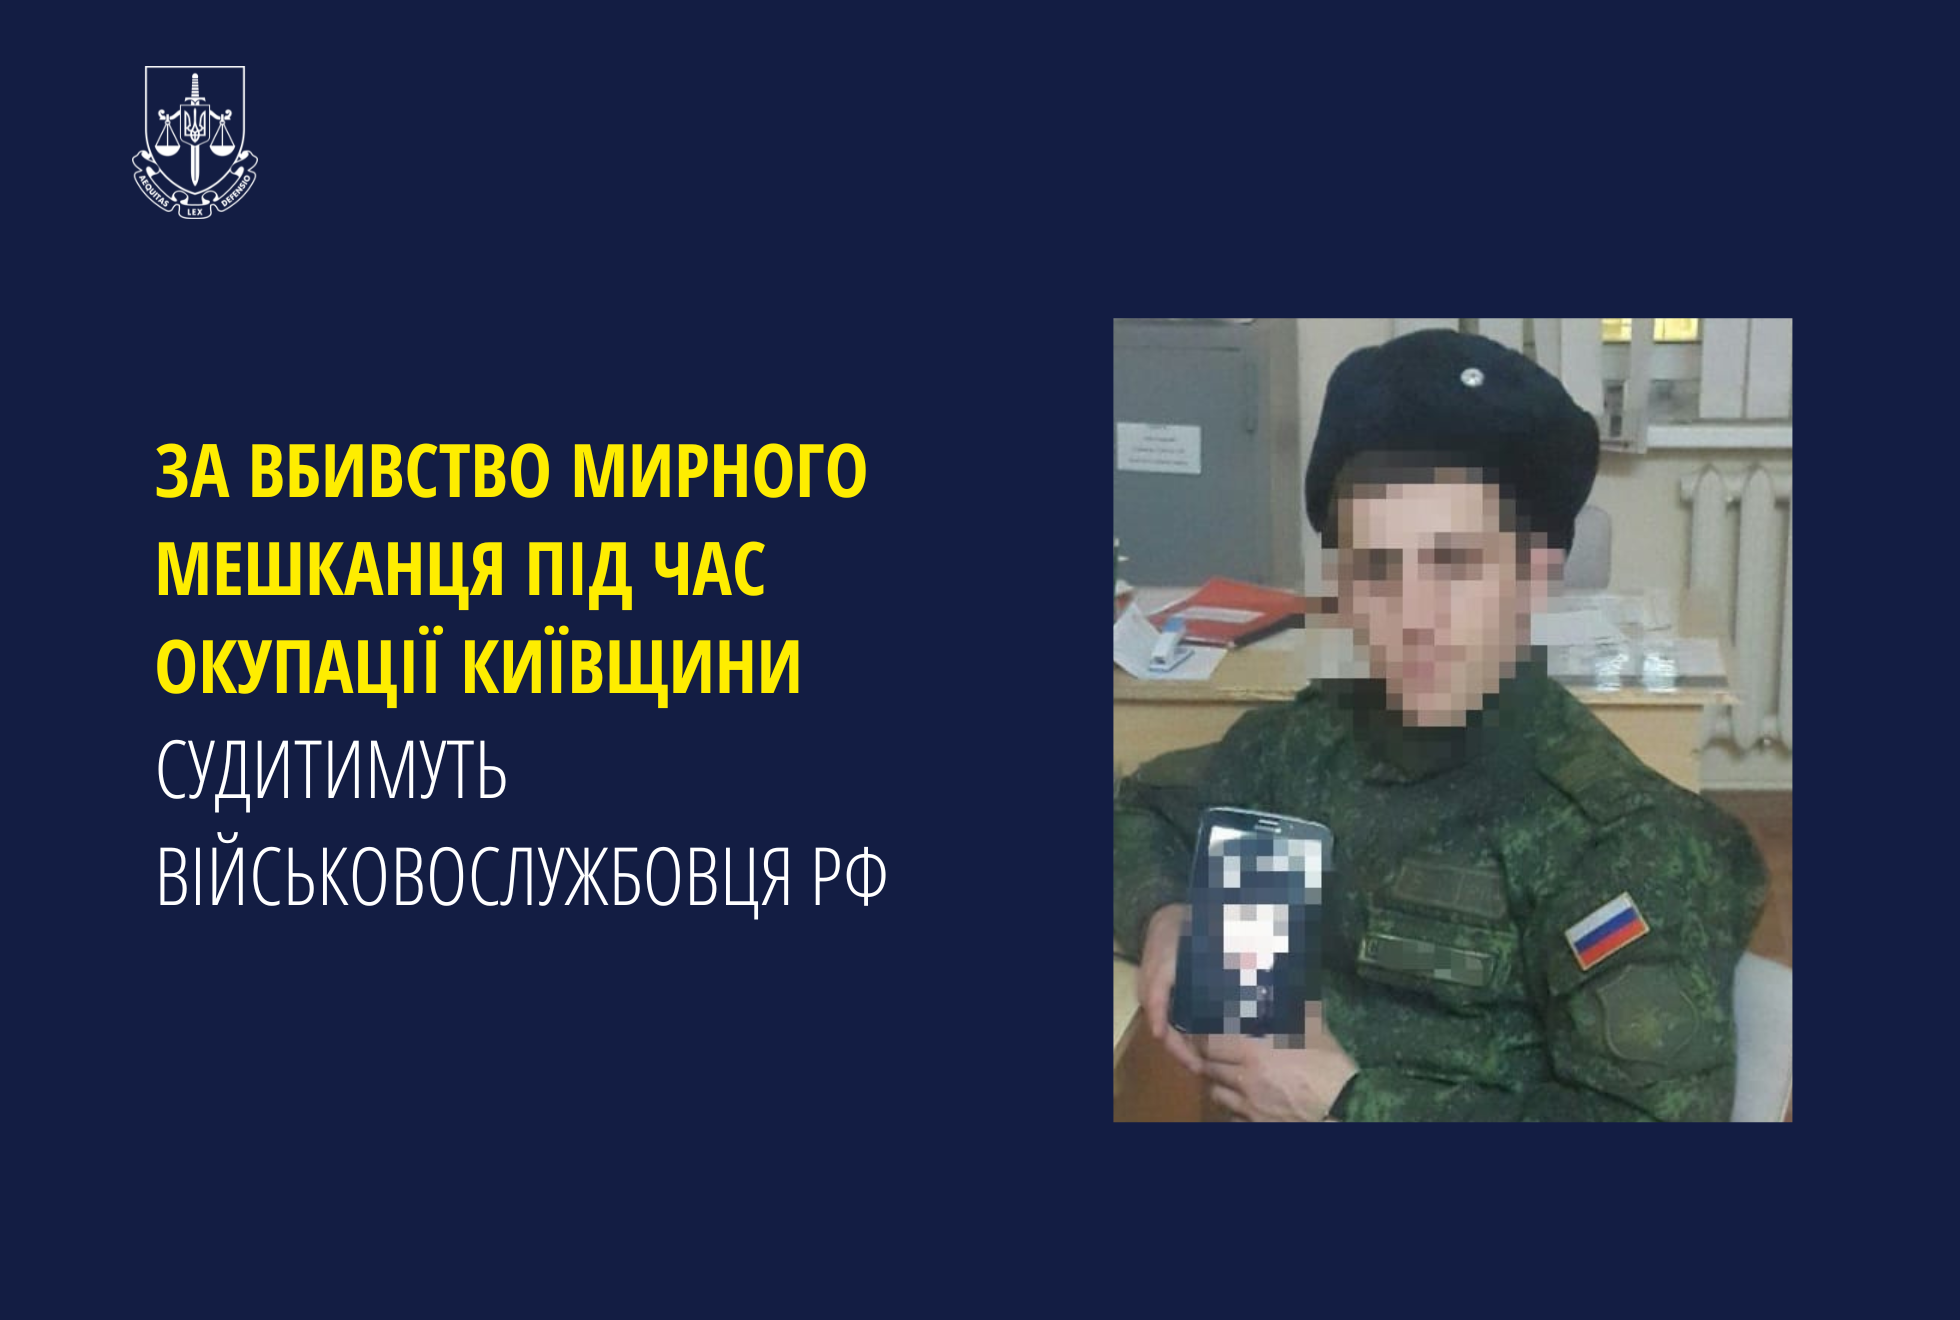 За вбивство мирного мешканця під час окупації Київщини судитимуть військовослужбовця рф